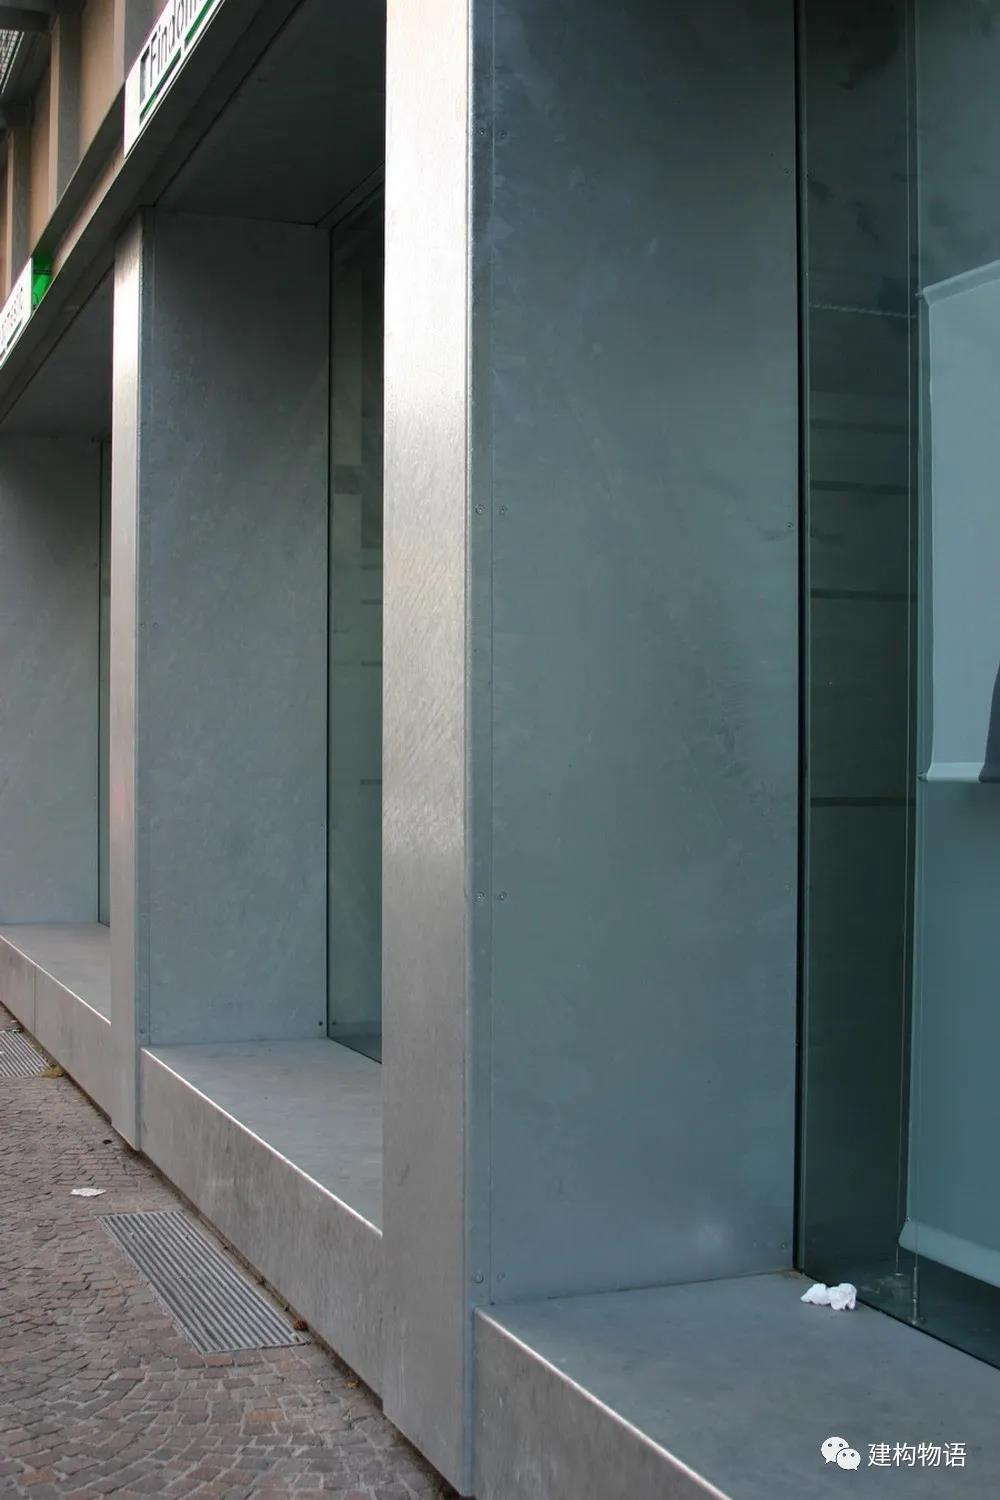 意大利Como某商店的镀锌钢板构造——平头内六角螺钉固定.jpg